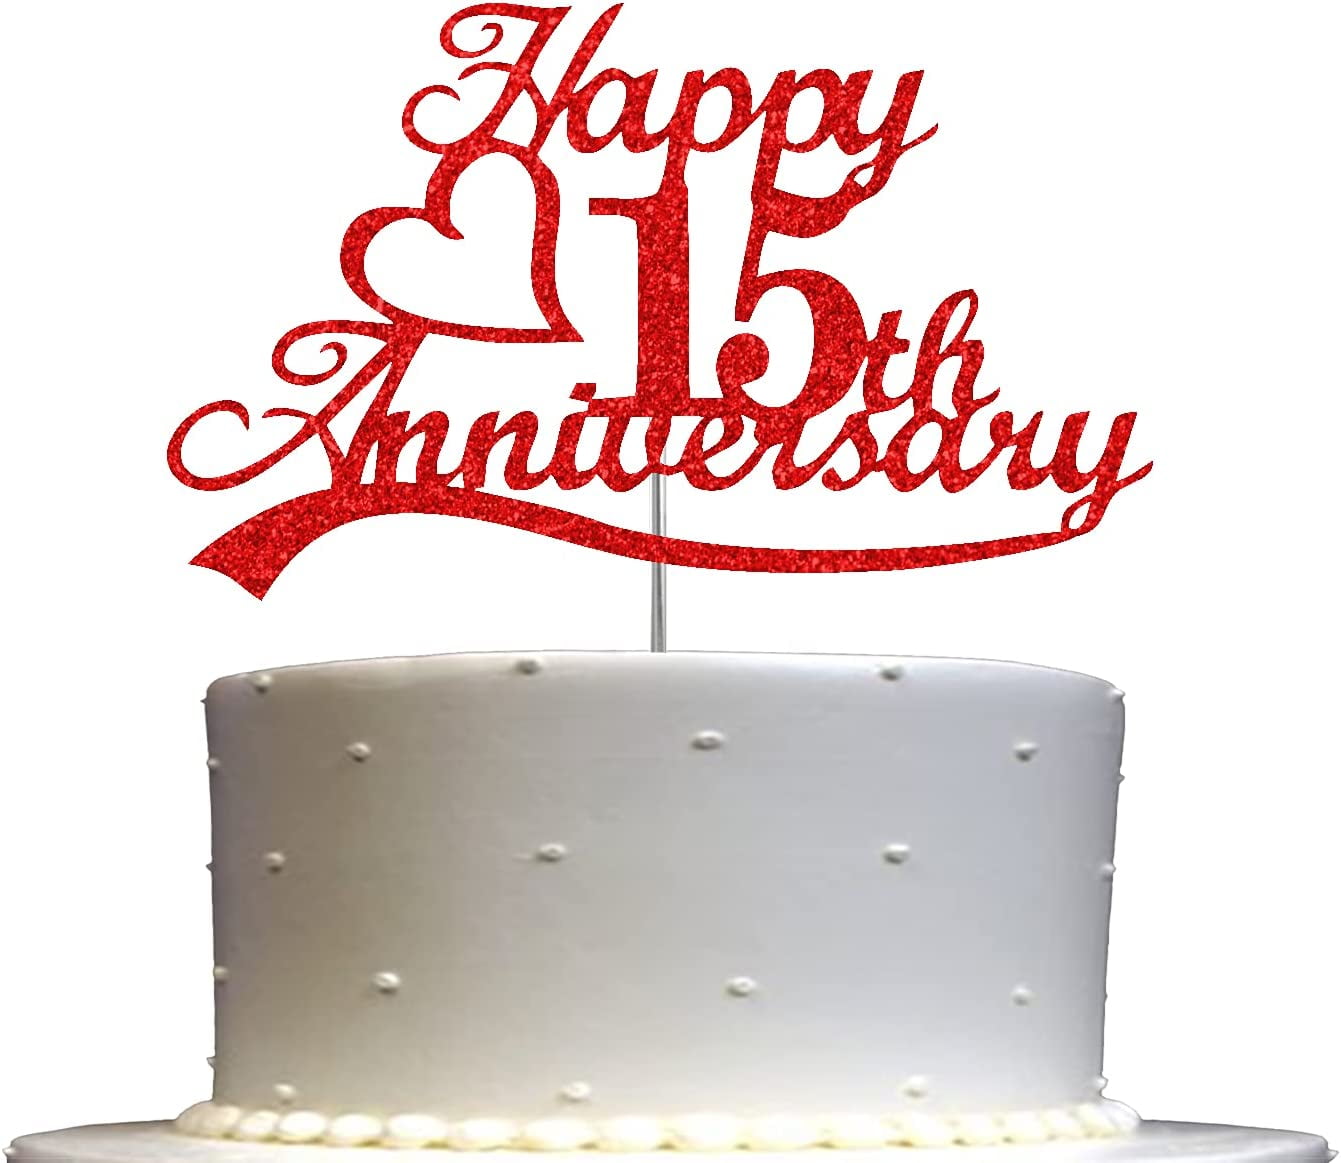 70th Wedding Anniversary Cake | Anniversary cake, 70th wedding anniversary, Wedding  anniversary cakes